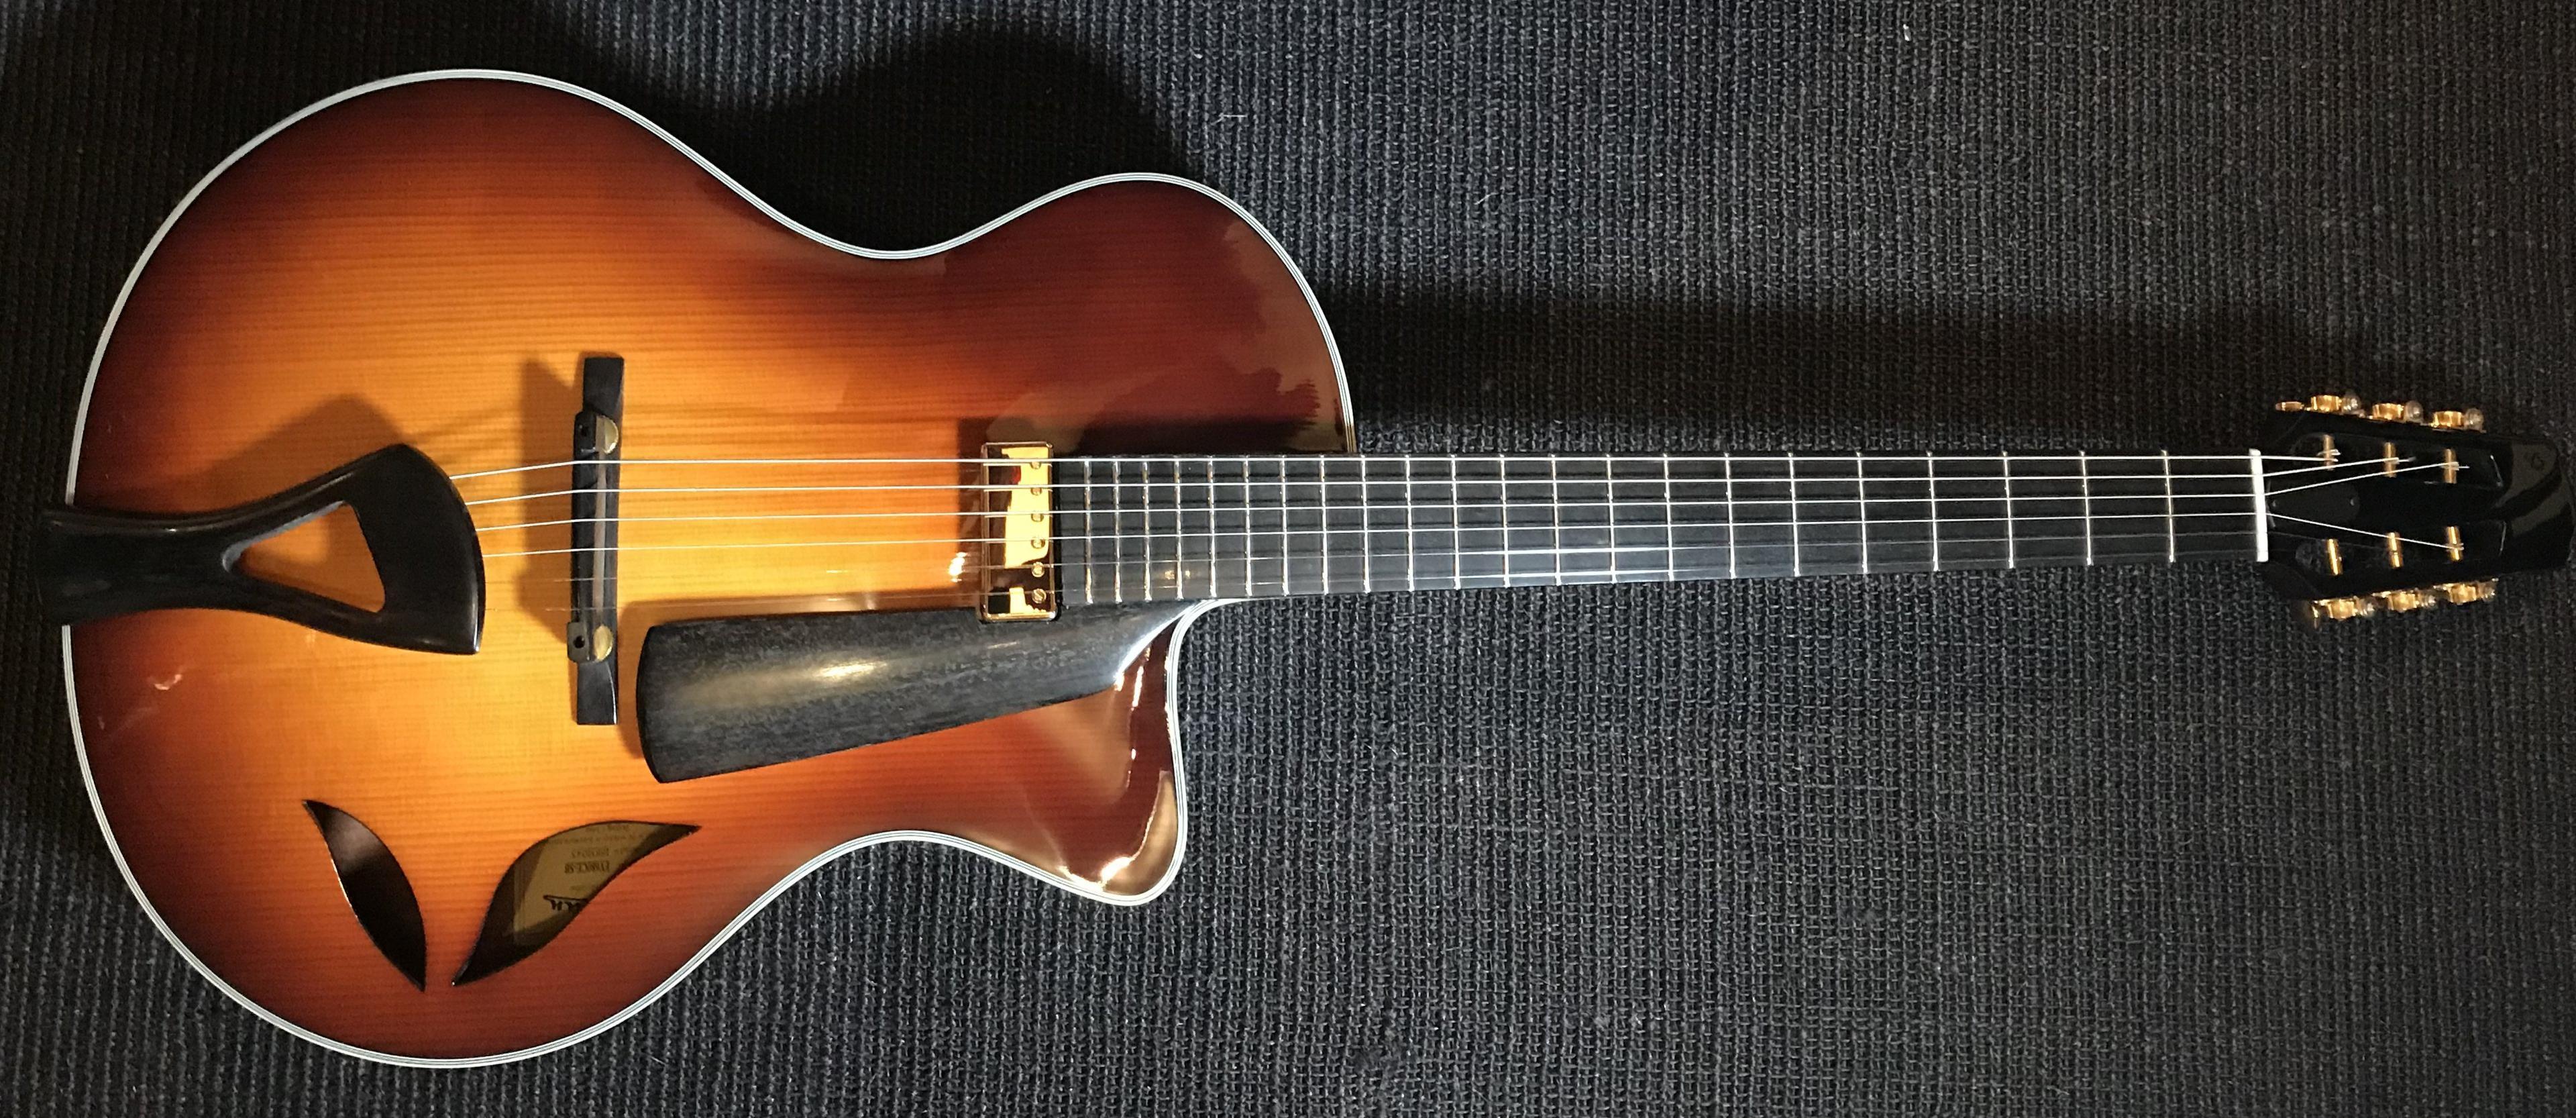 Eastman FV680CE-SB FRANK VIGNOLA MODEL, Electric Guitar for sale at Richards Guitars.